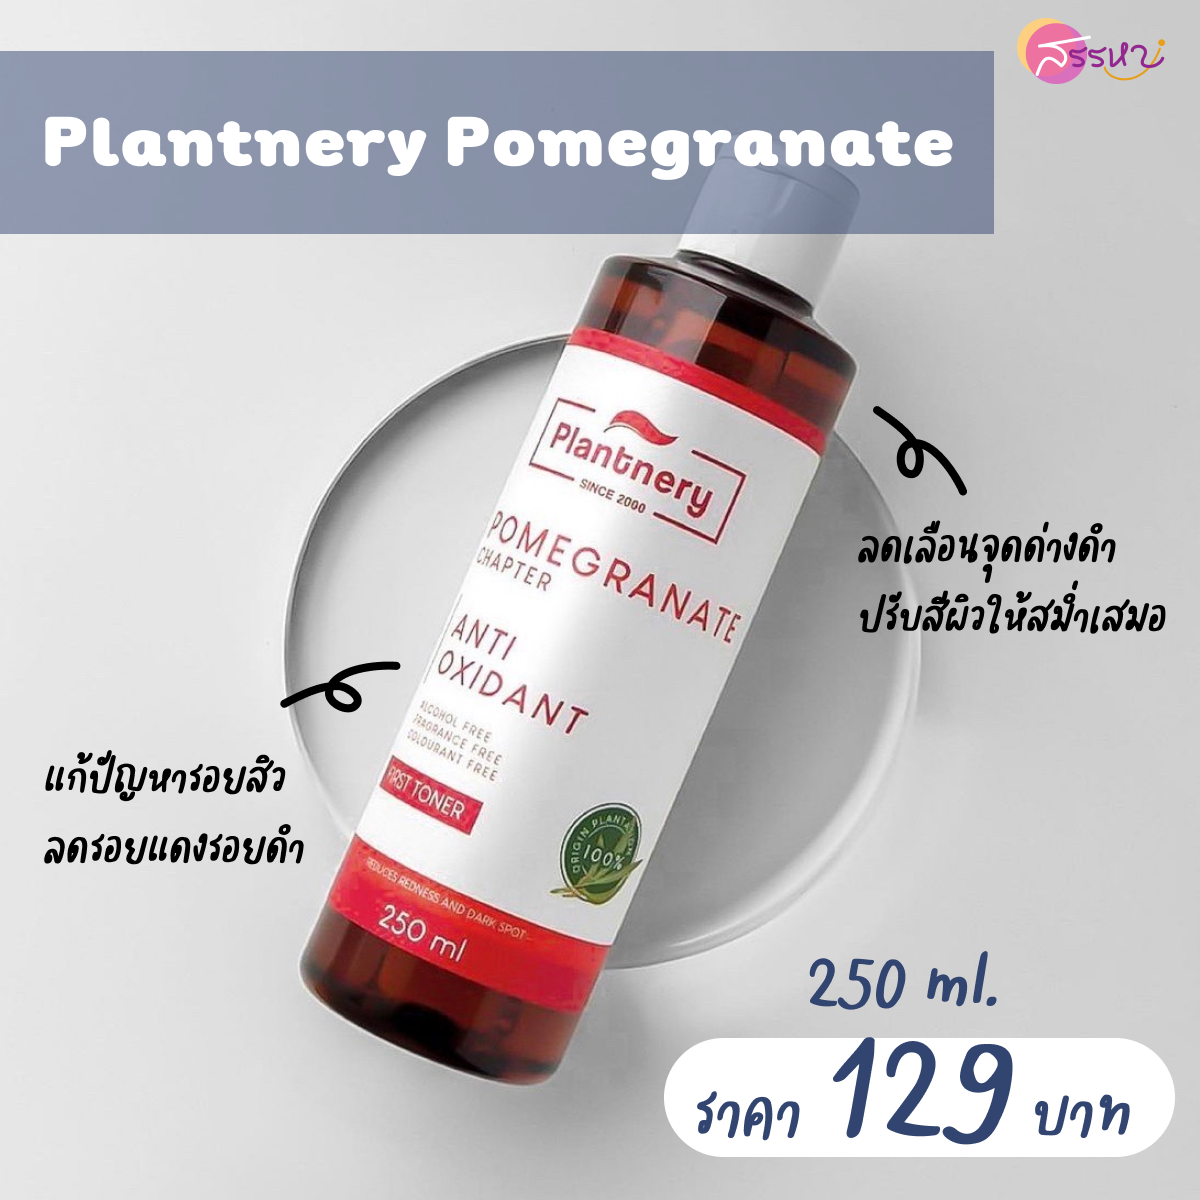 Plantnery Pomegranate